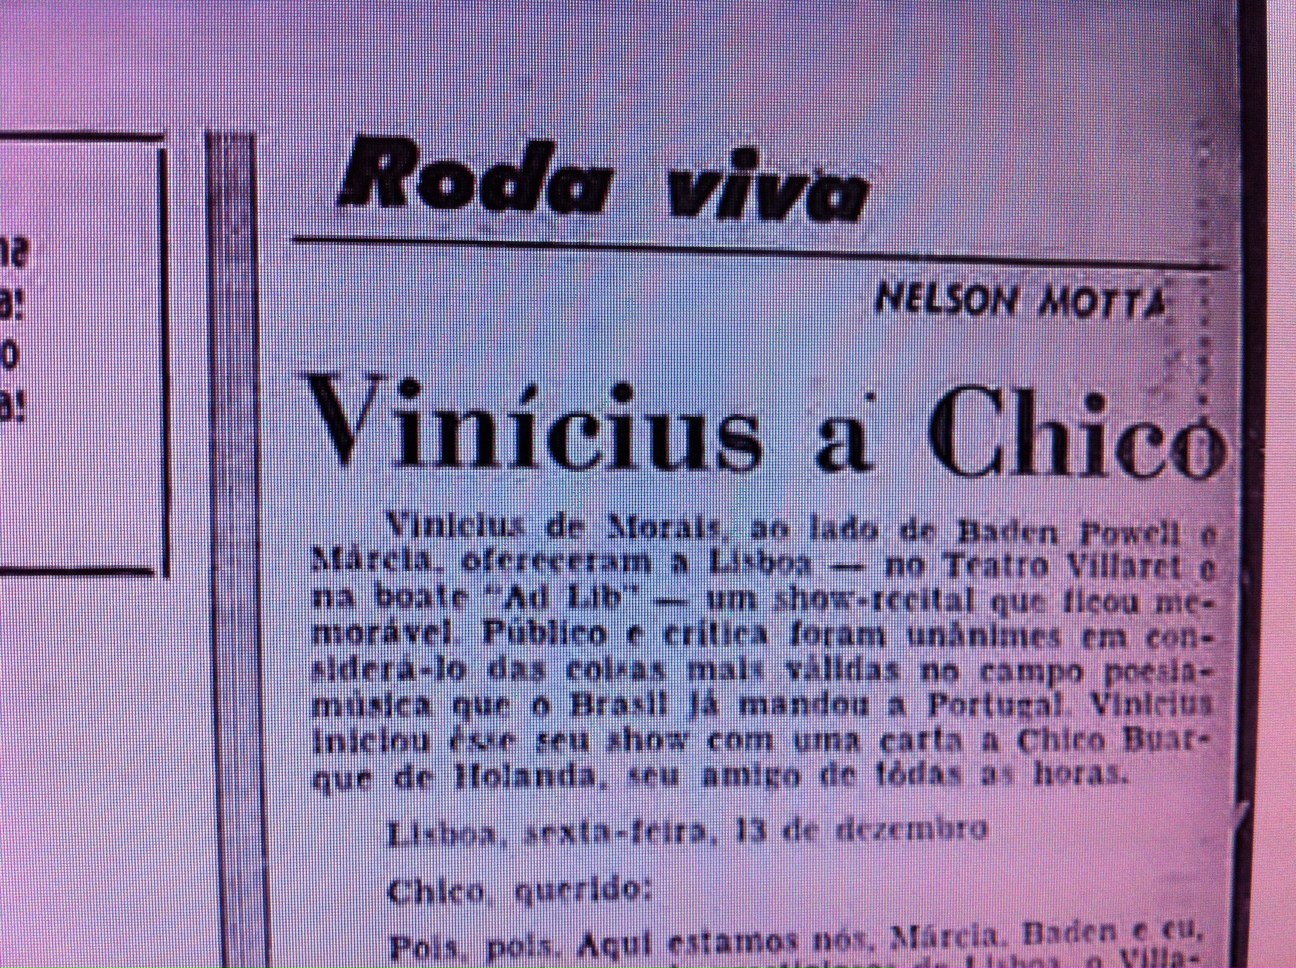 Coisas de Ledesma: Carta de Vinicius para Chico 1968